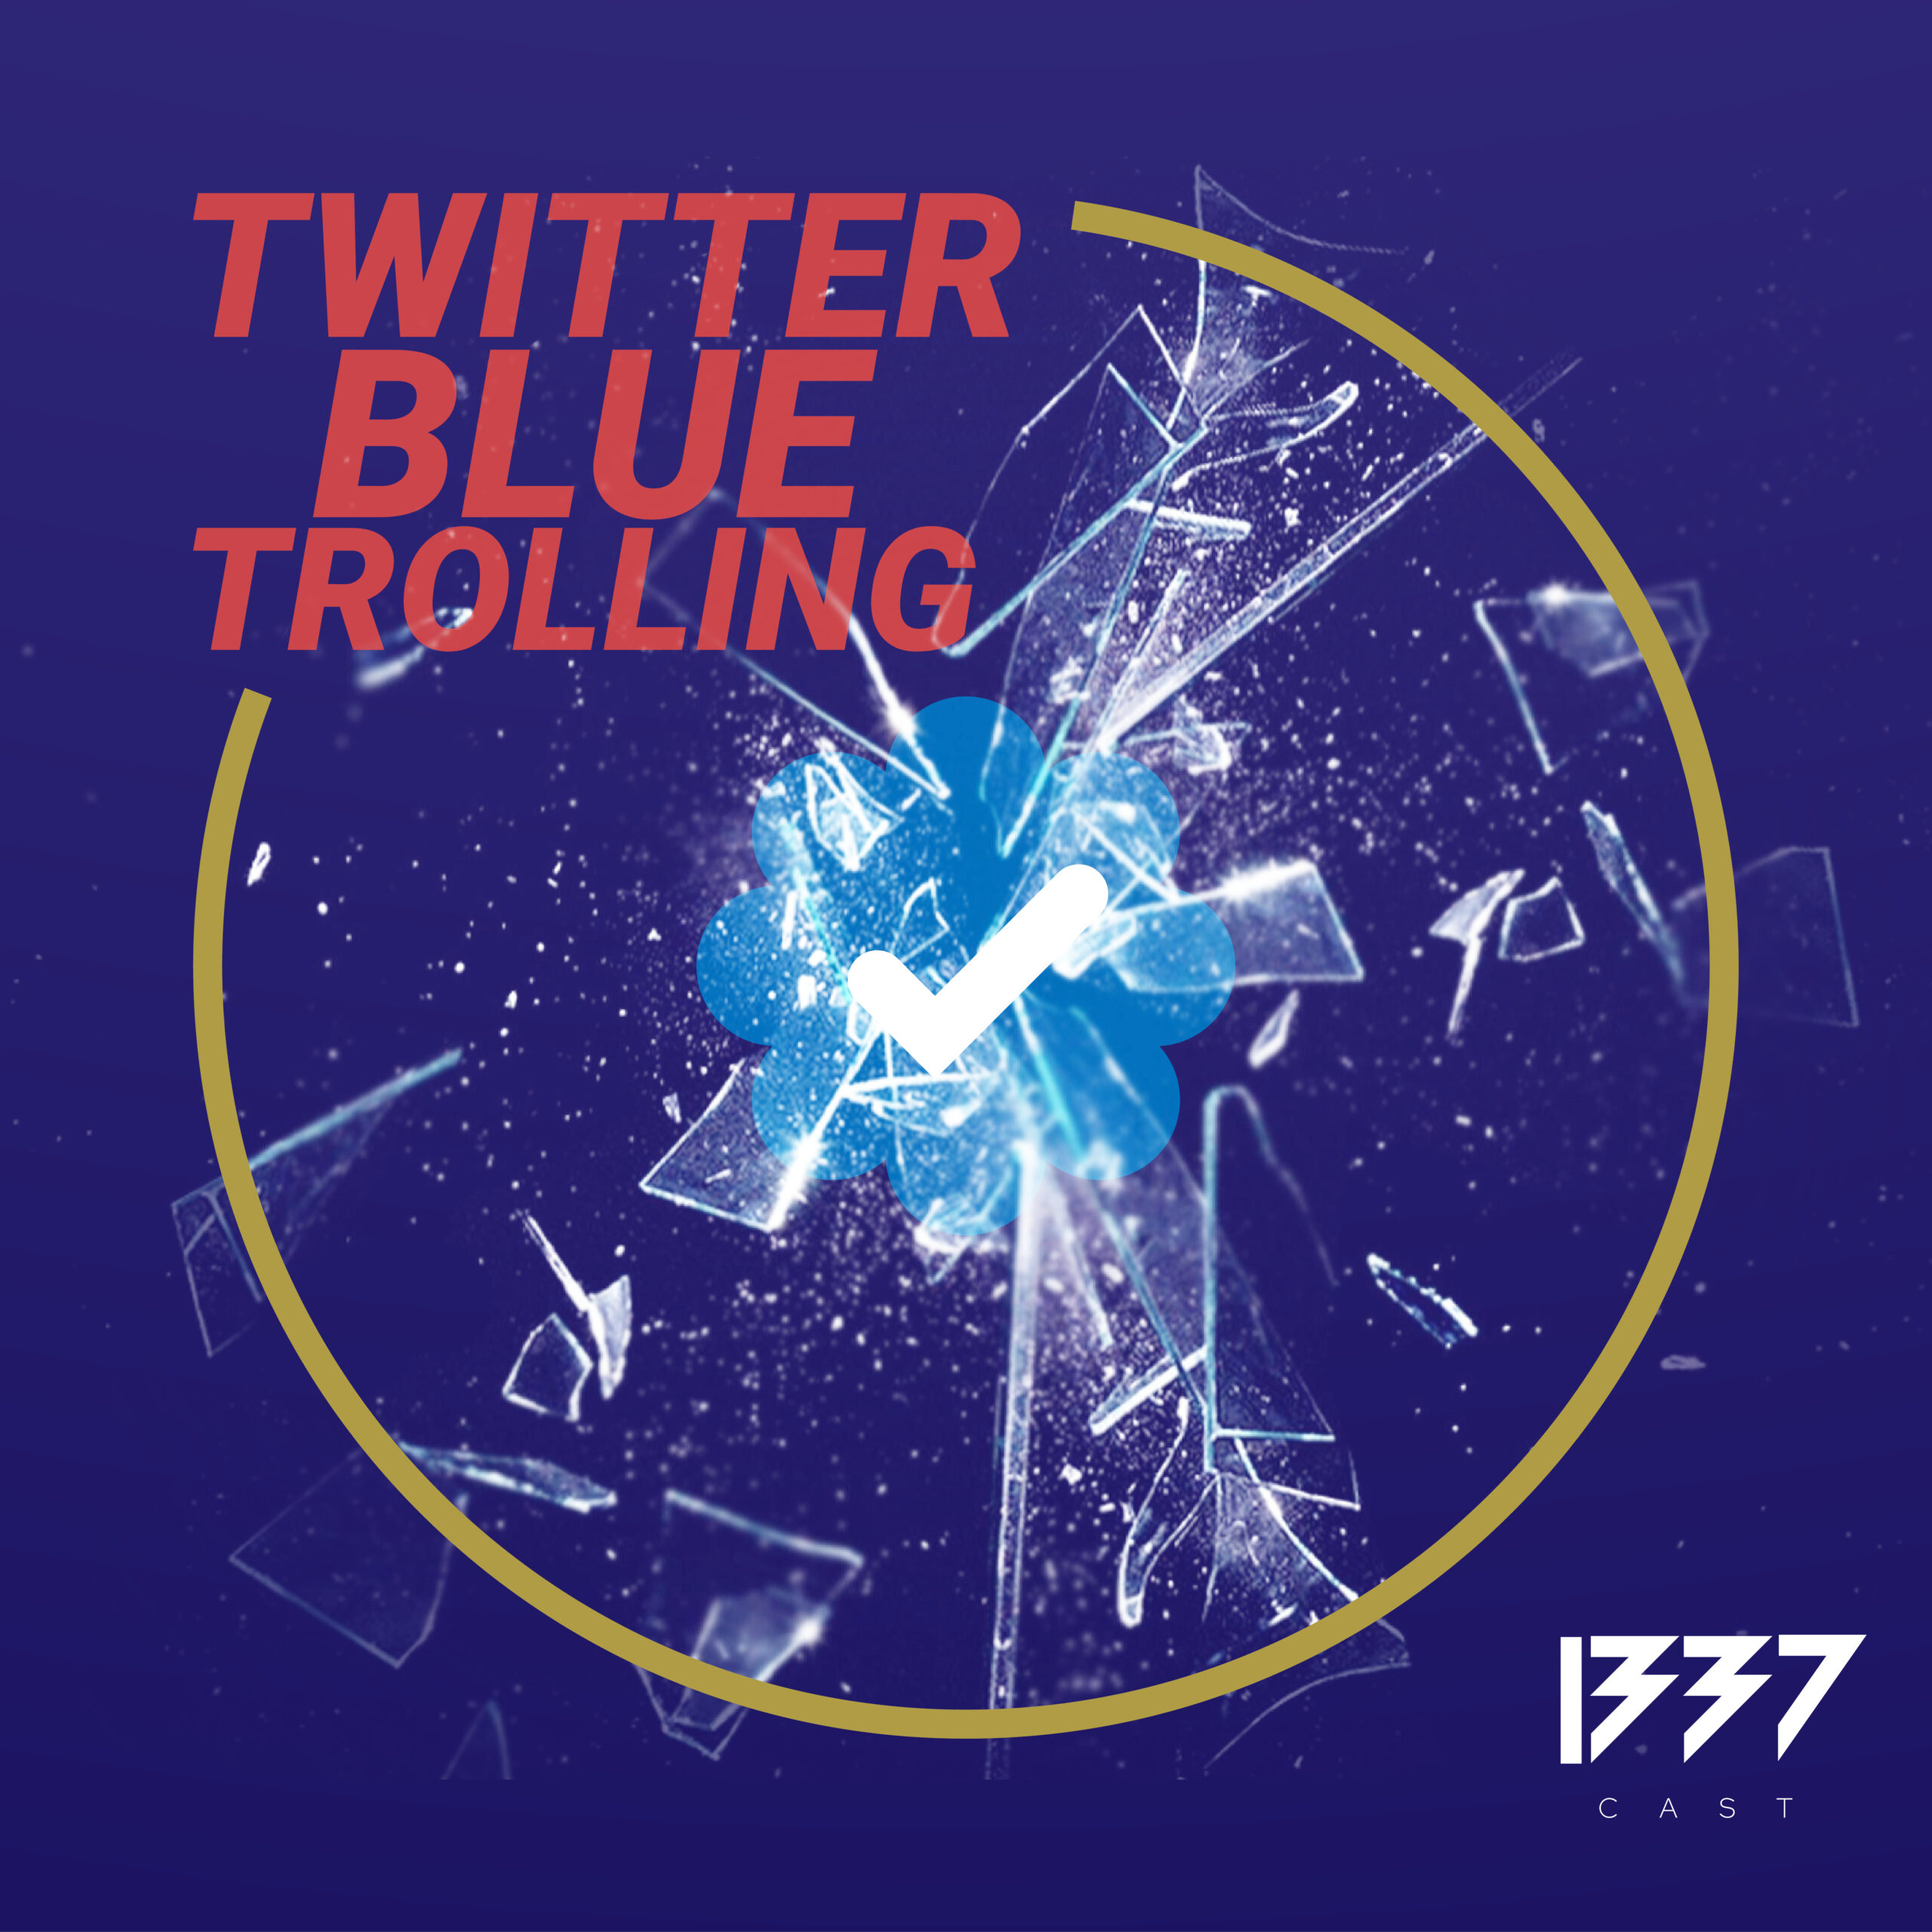 Wie man mit 8$ Konzerne zerstört – Twitter Blue Trolling